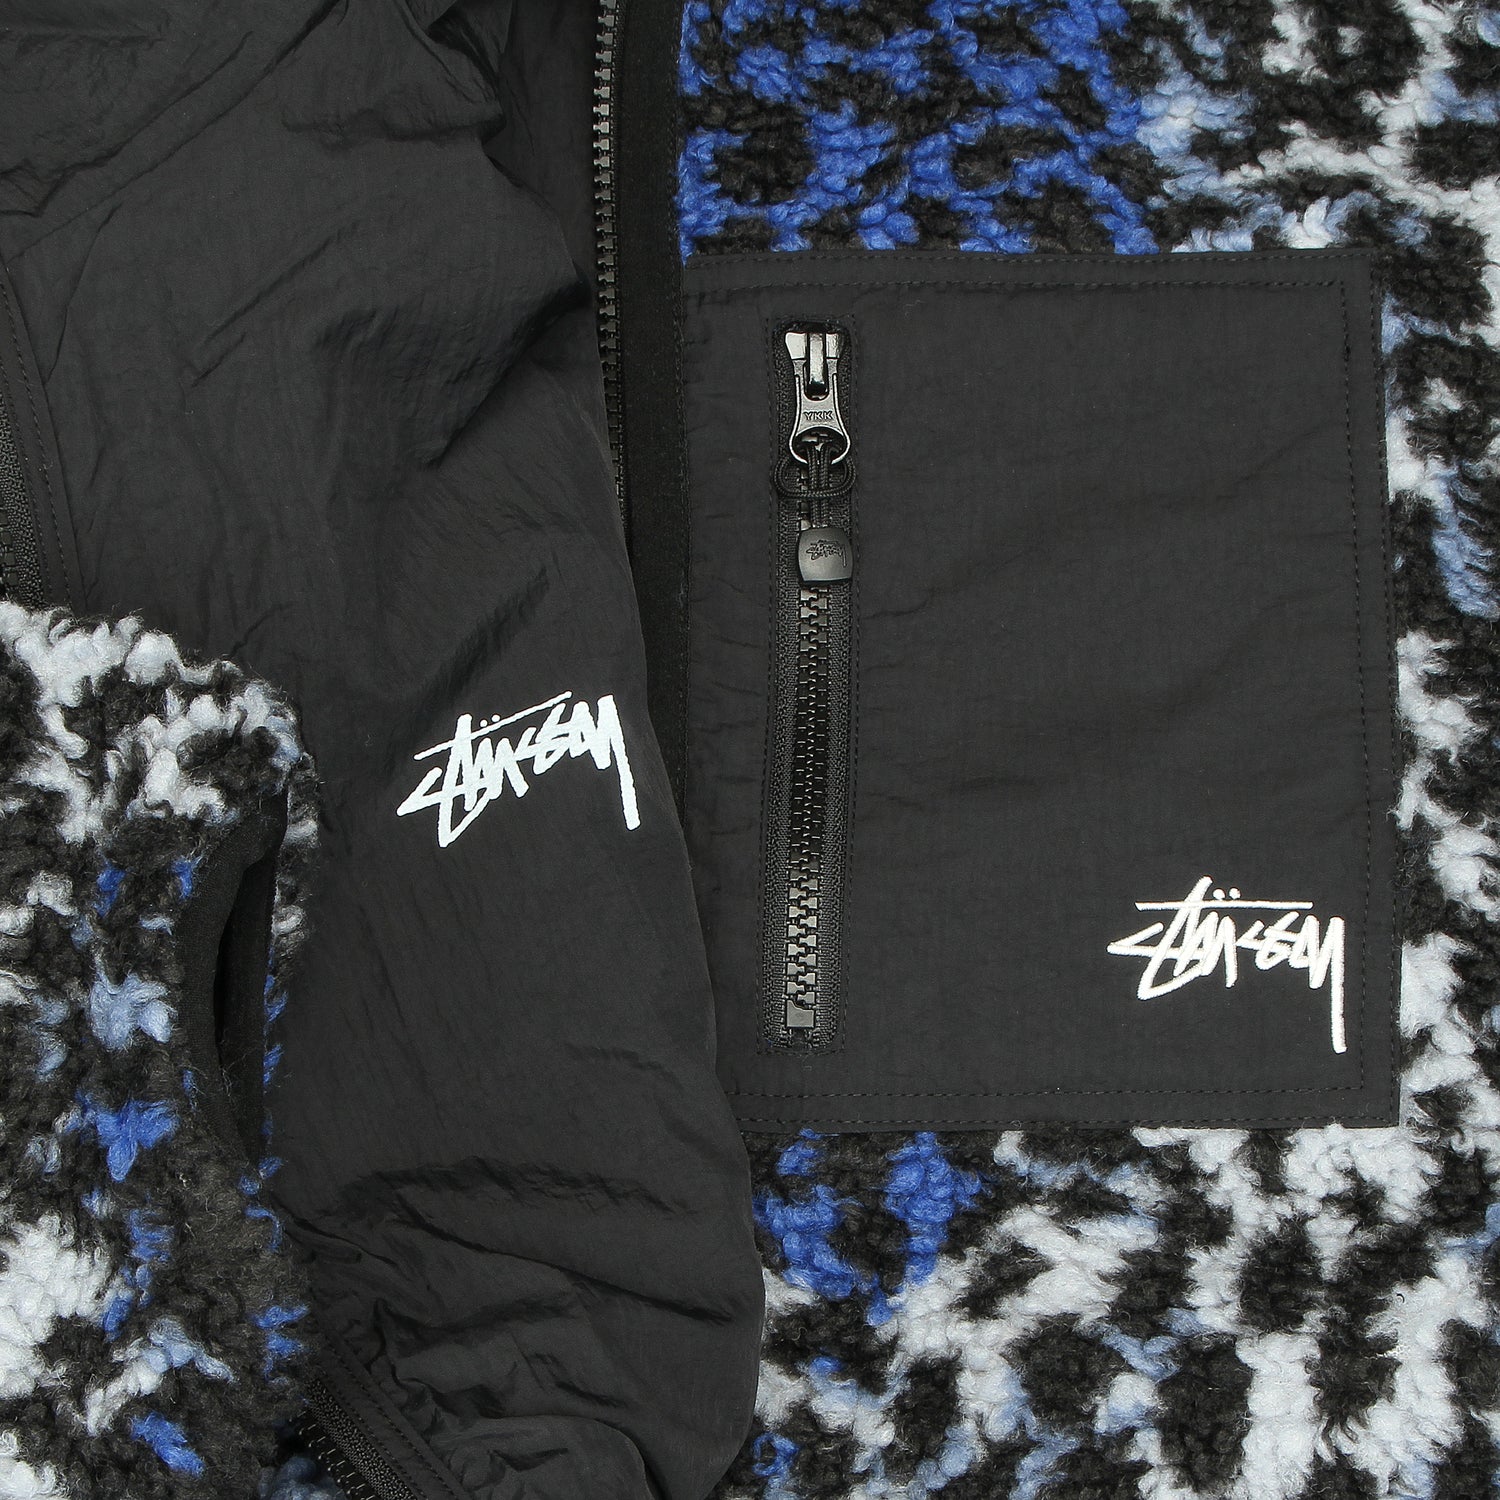 Stussy | Sherpa Reversible Jacket Blue Leopard